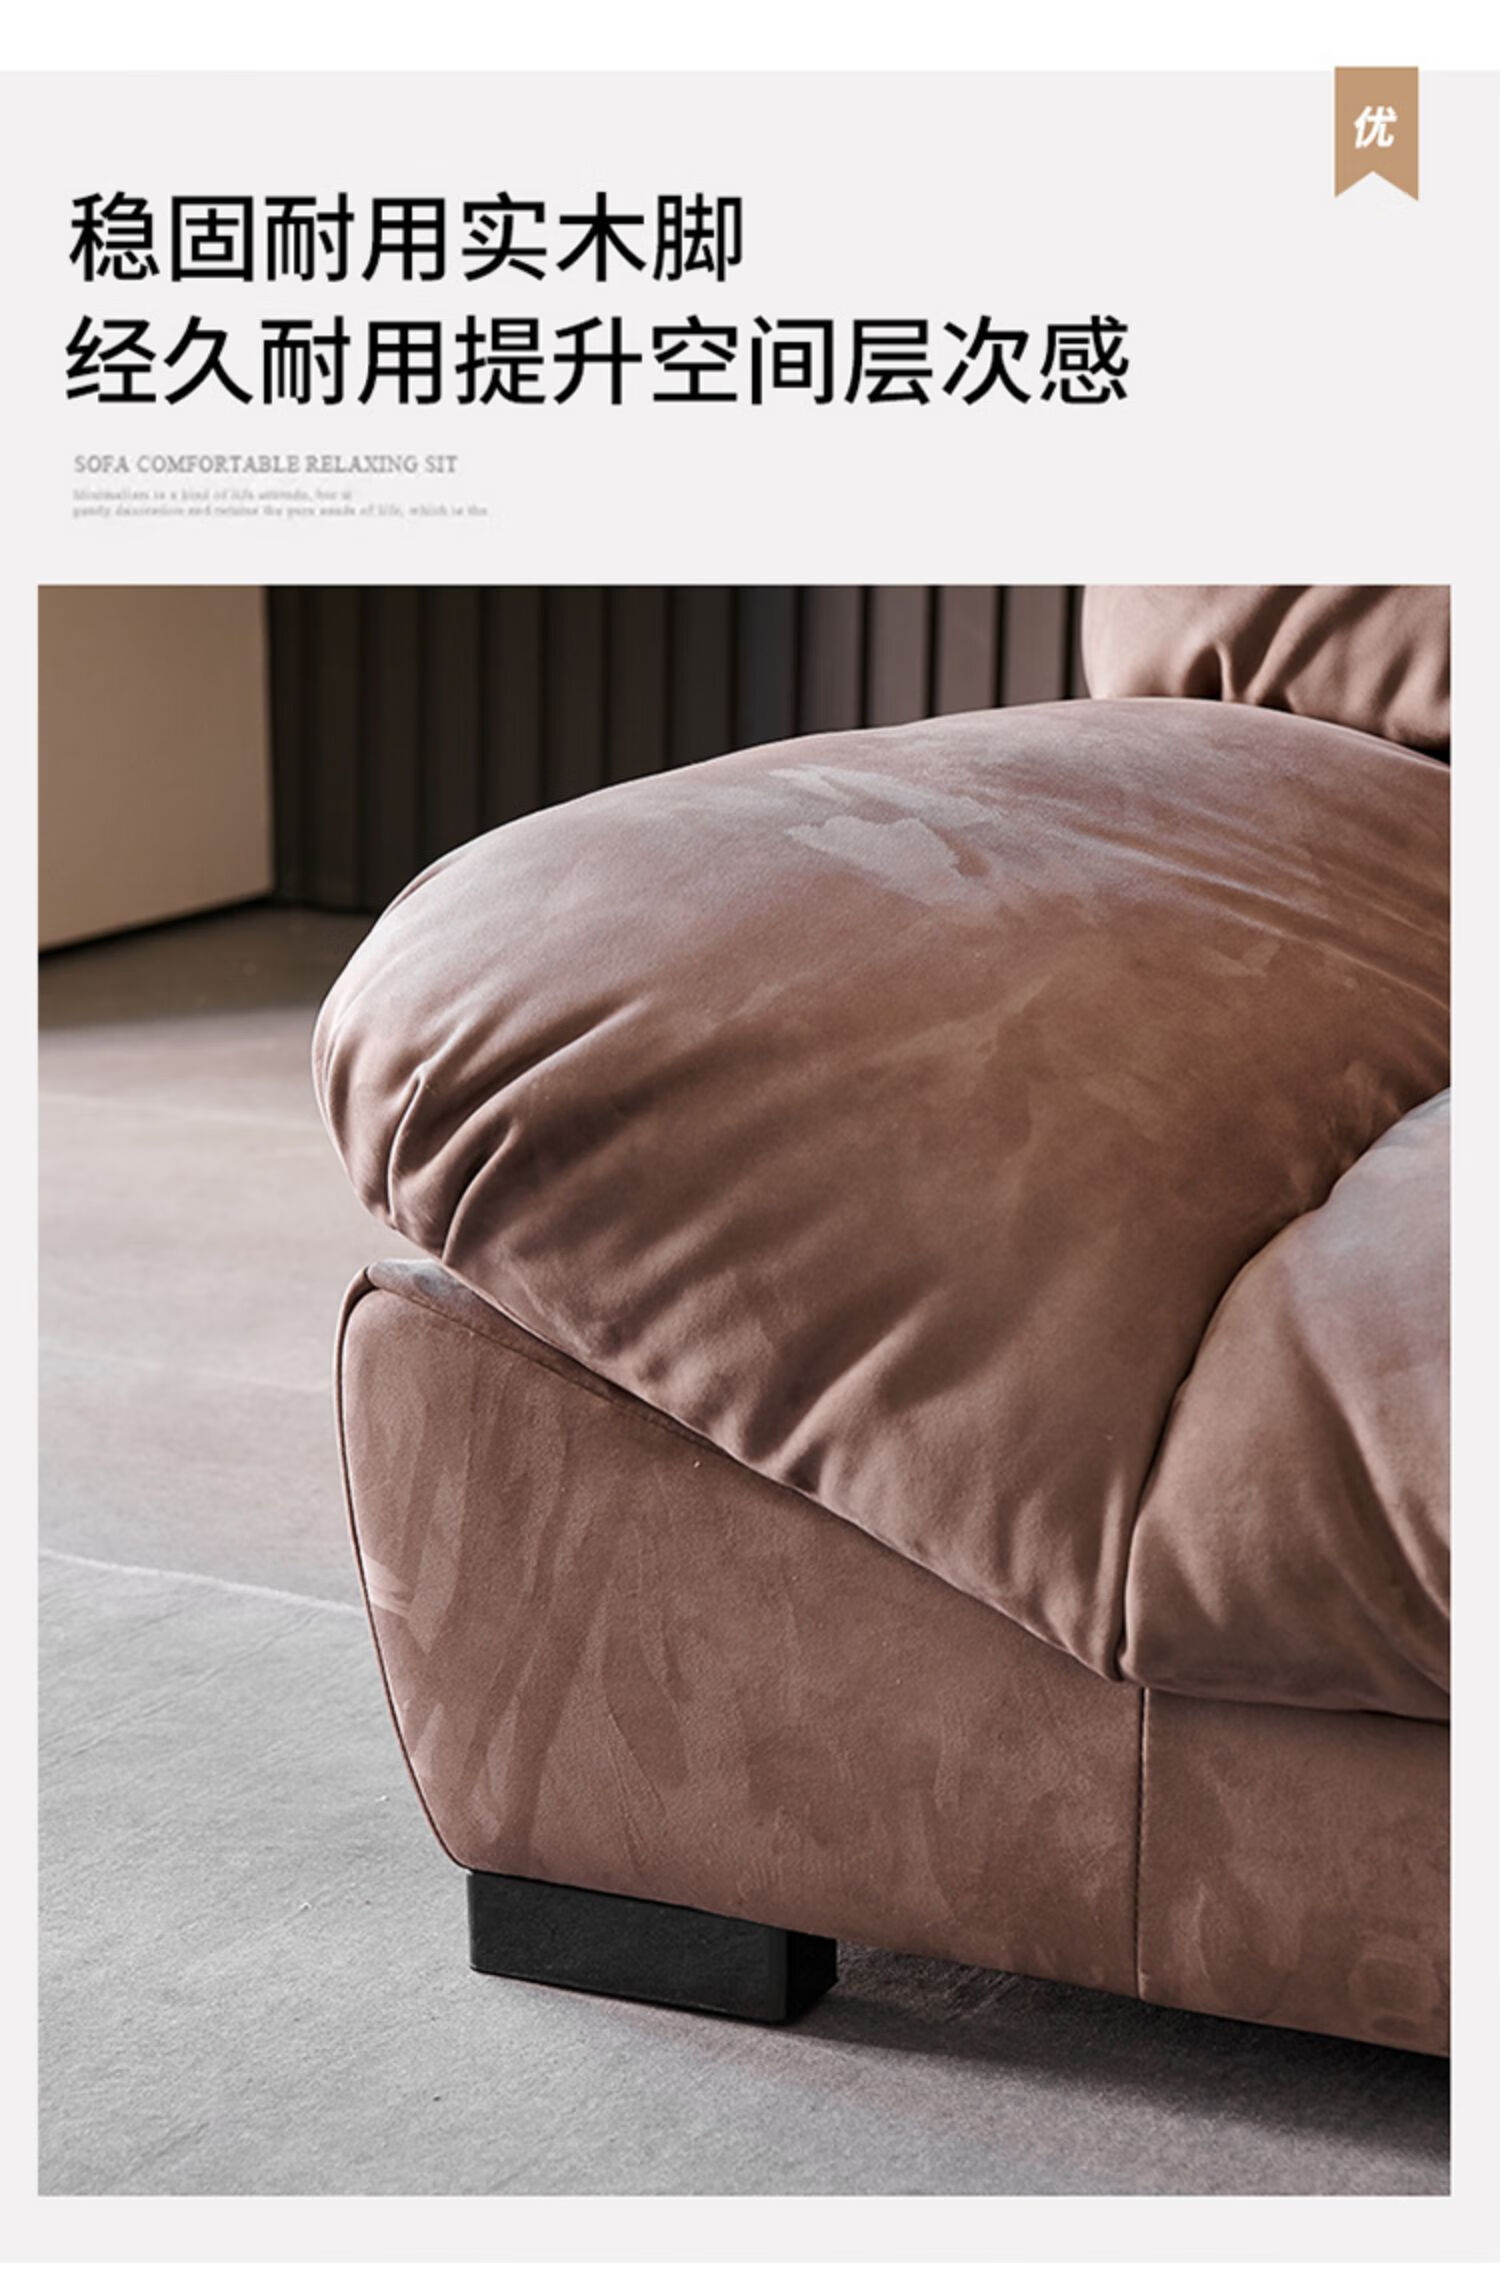 jaedroau意式科技布沙发直排小户型整装客厅家具免洗布艺沙发单人位15